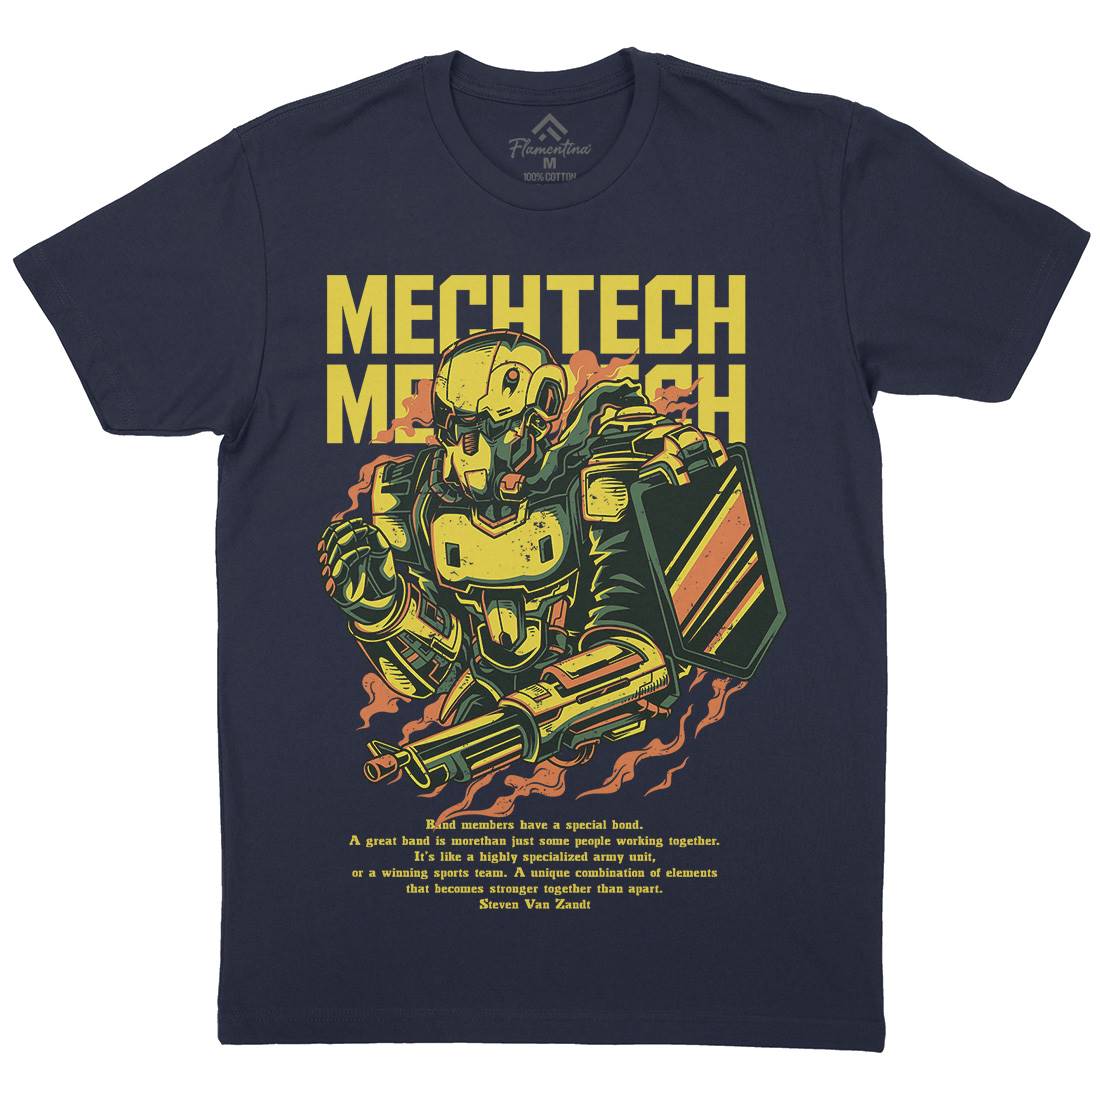 Mech Tech Mens Crew Neck T-Shirt Army D650